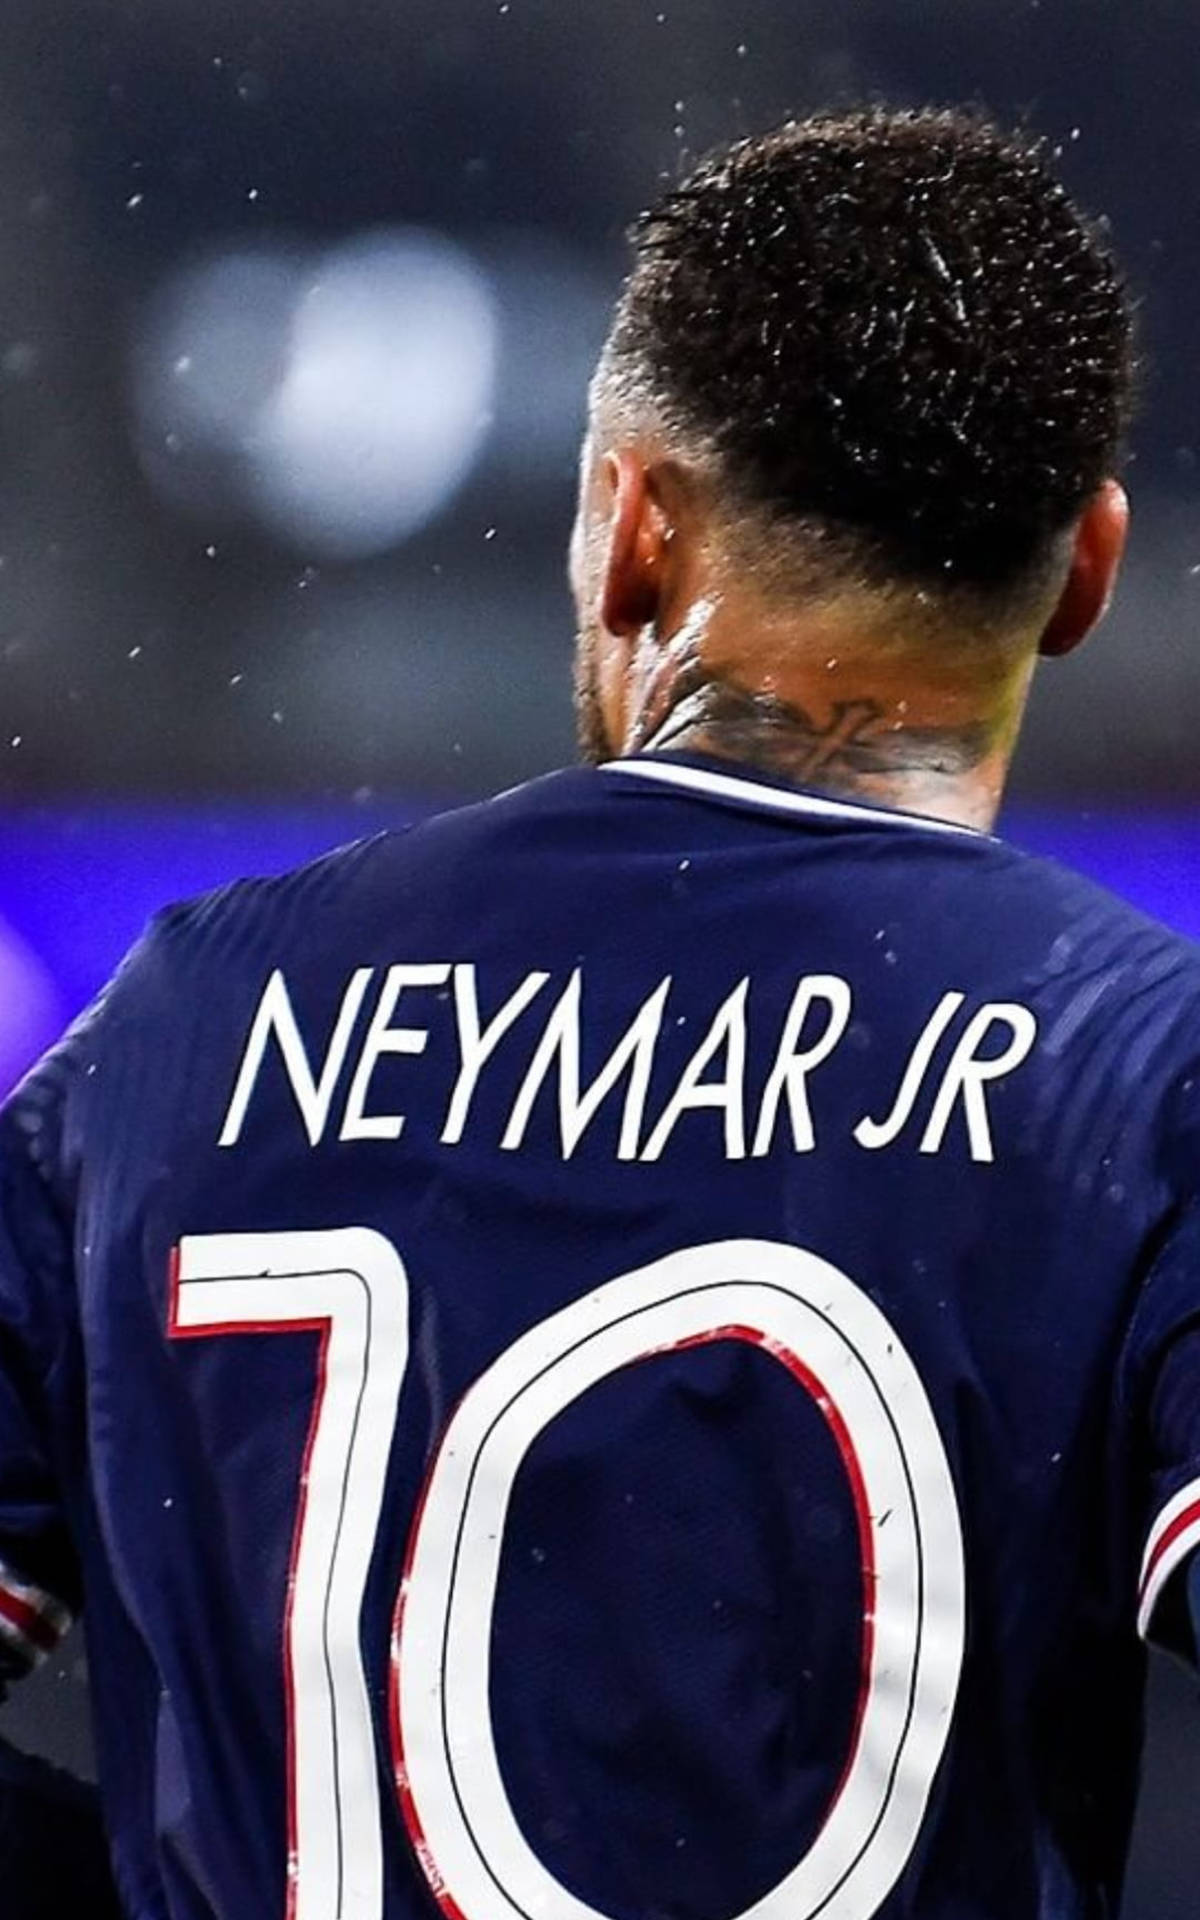 Jersey 10 Of Neymar Jr